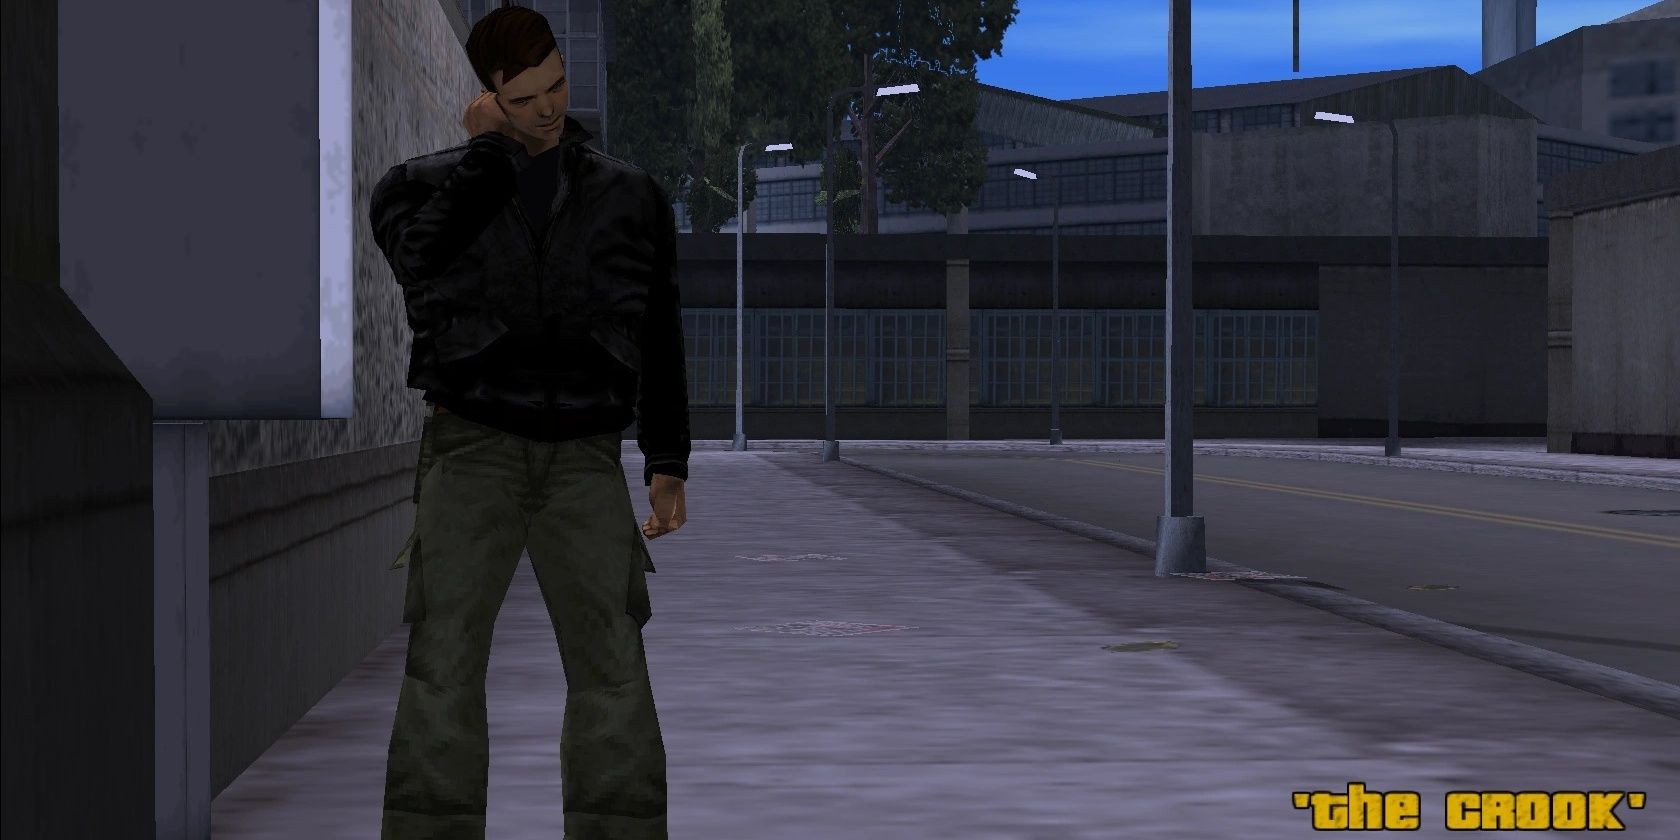 Клод разговаривает по телефону-автомату из Grand Theft Auto III